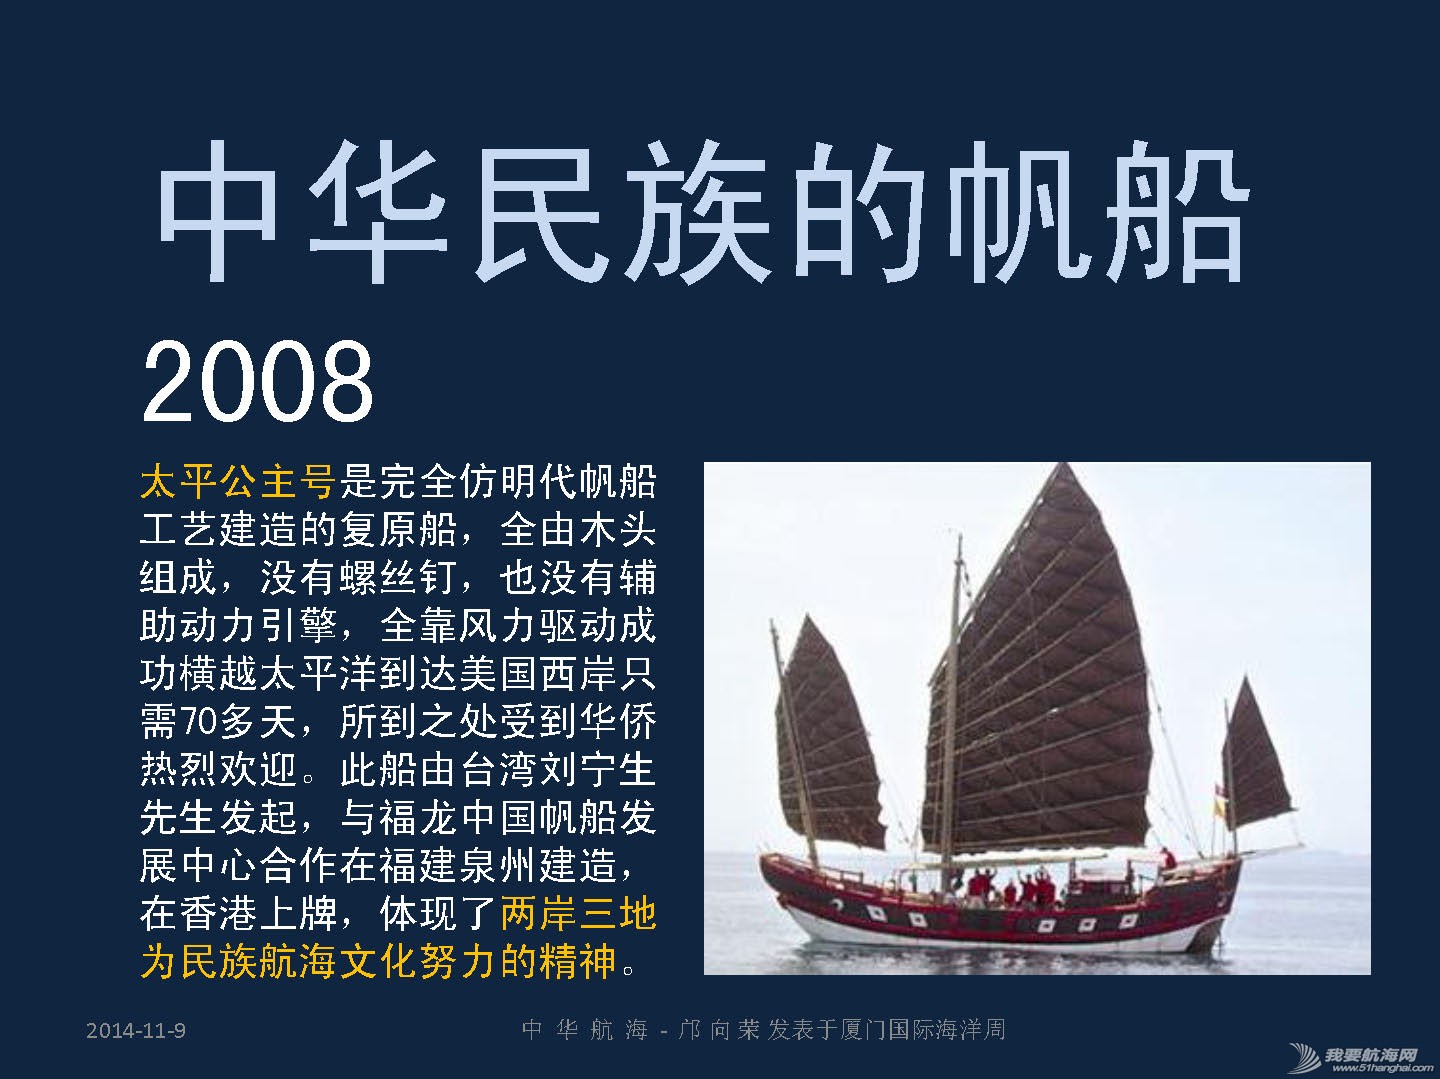 邝向荣保护中式帆船文化-中华航海-演讲稿_Page_29.jpg